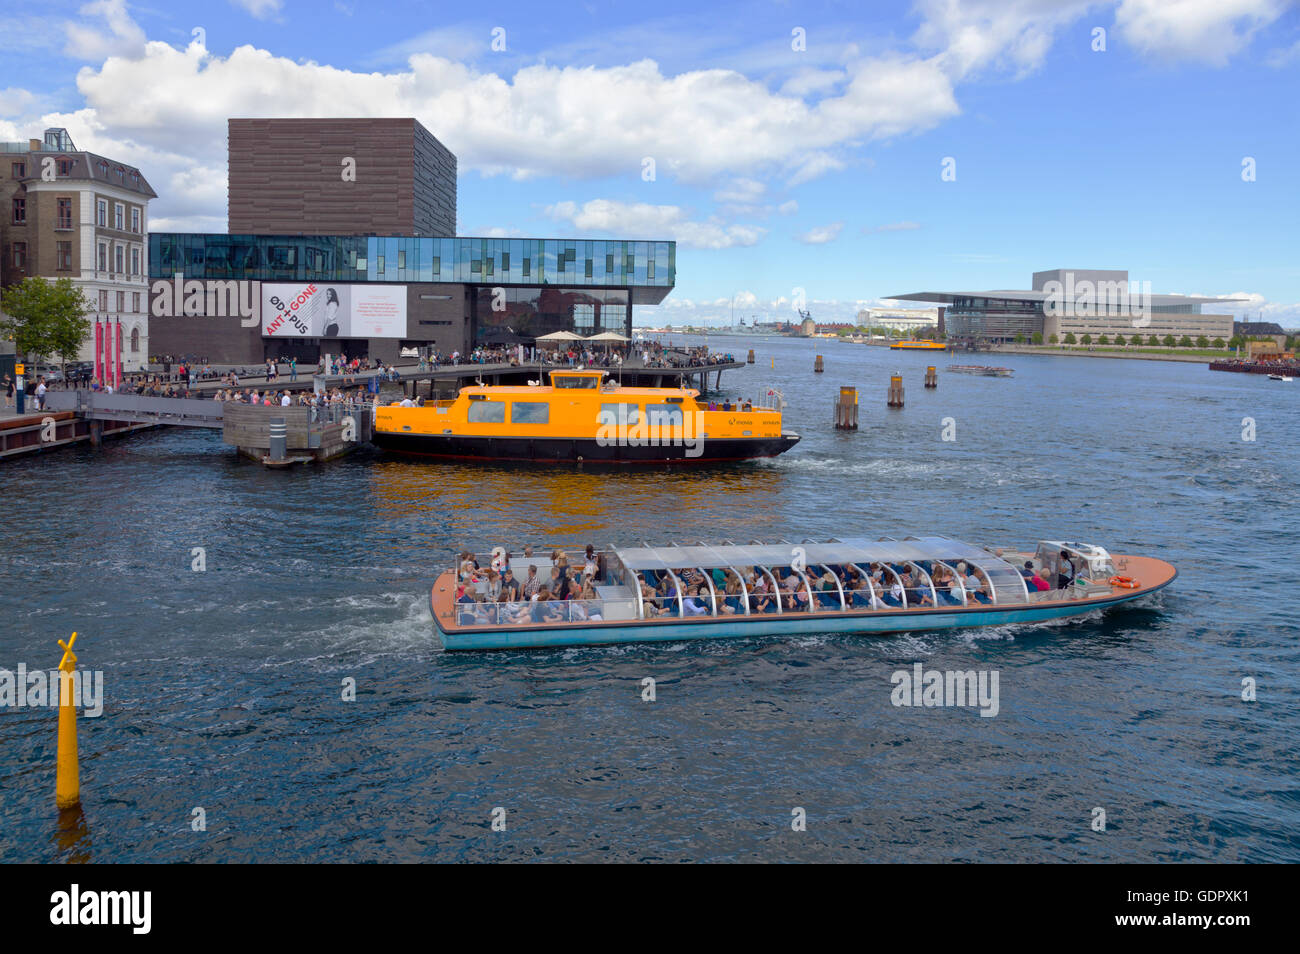 Ein Kanalkreuzfahrtschiff und ein gelber Hafenbus am Royal Playhouse in Nyhavn in Kopenhagen. Das Royal Danish Opera House befindet sich gegenüber vom Hotel. Stockfoto